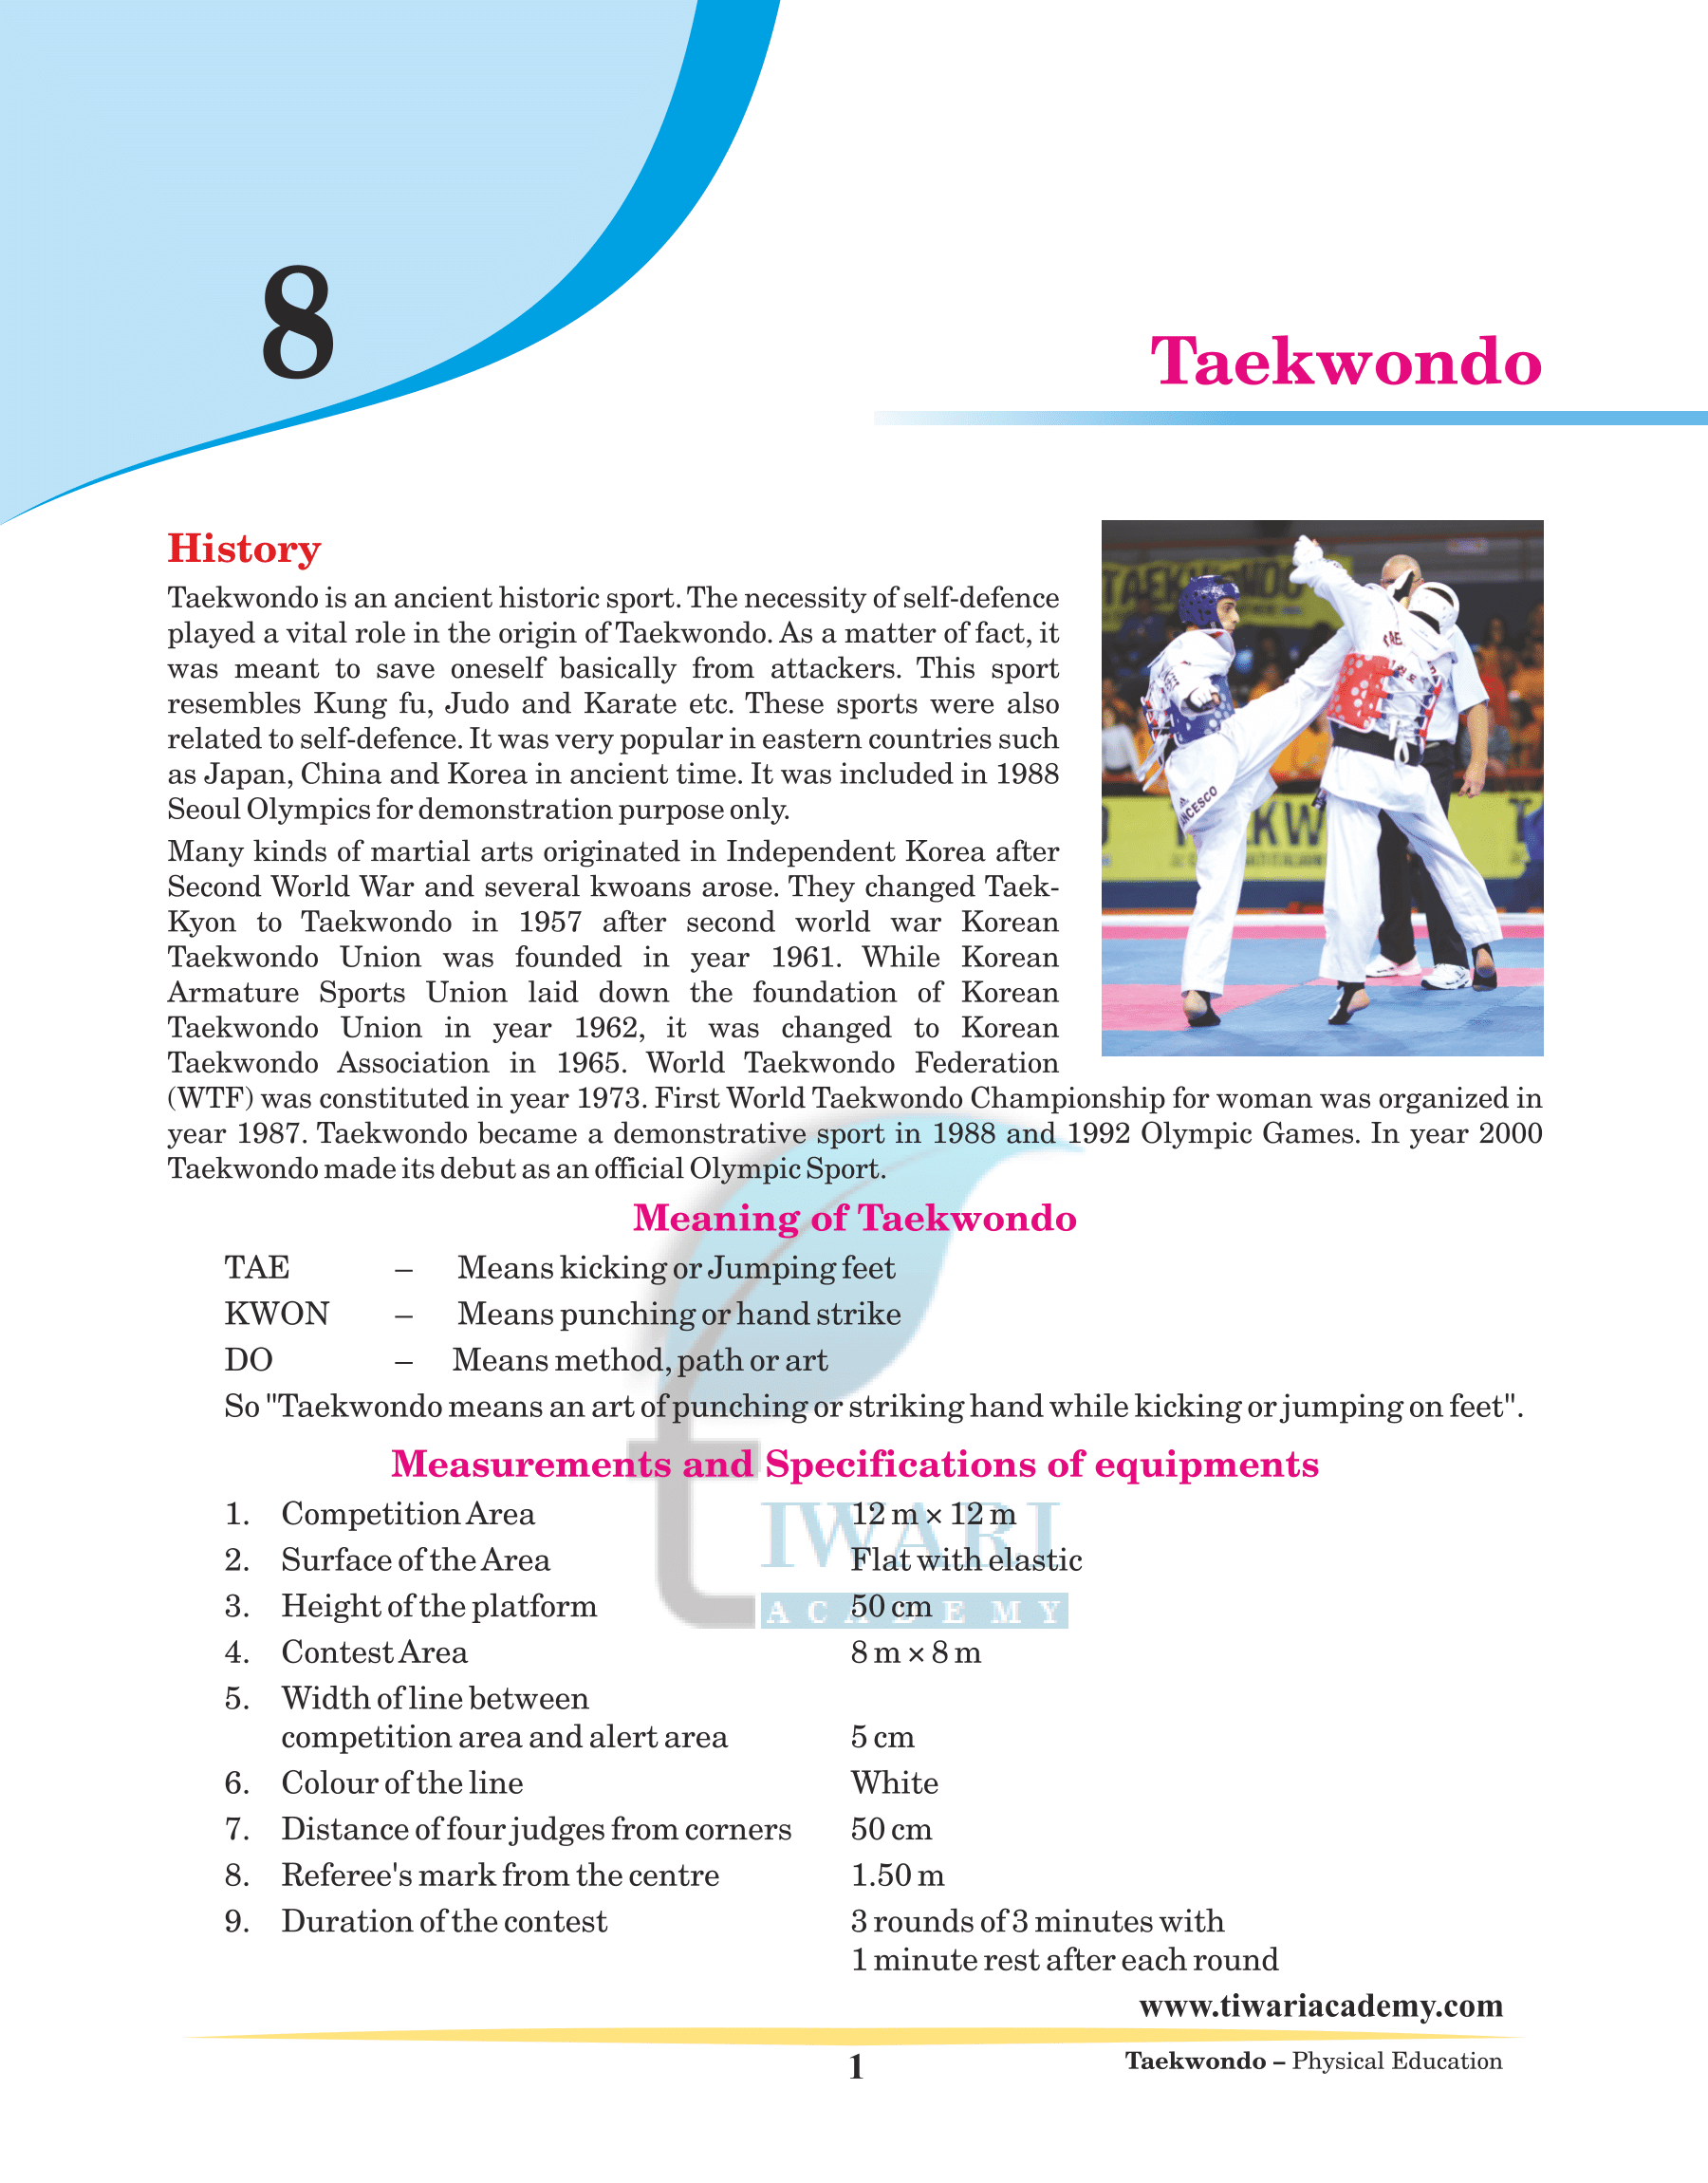 Taekwondo events